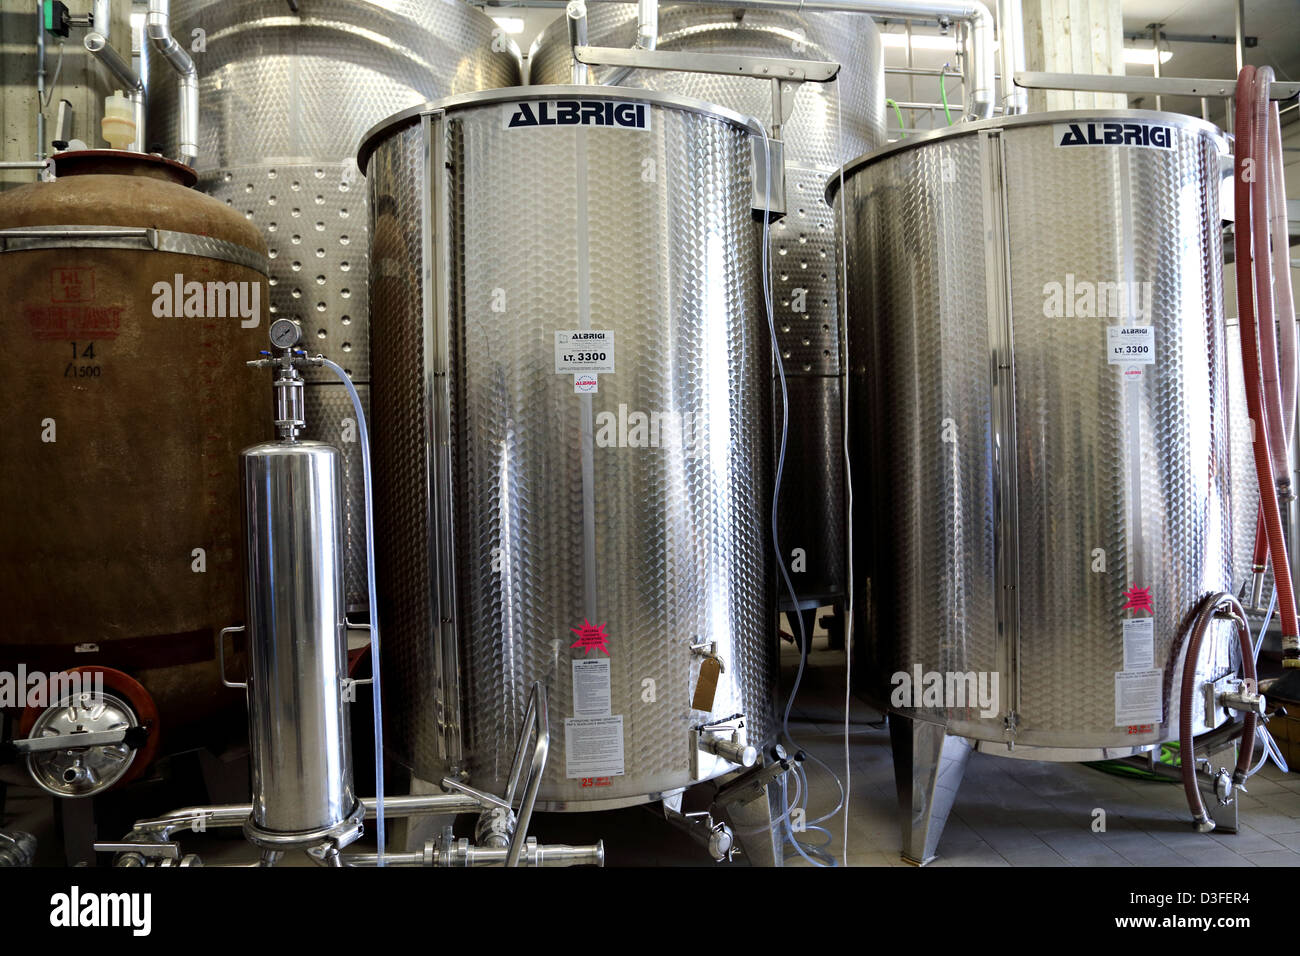 Des conteneurs en acier inoxydable utilisés dans la production de vin en Italie Banque D'Images